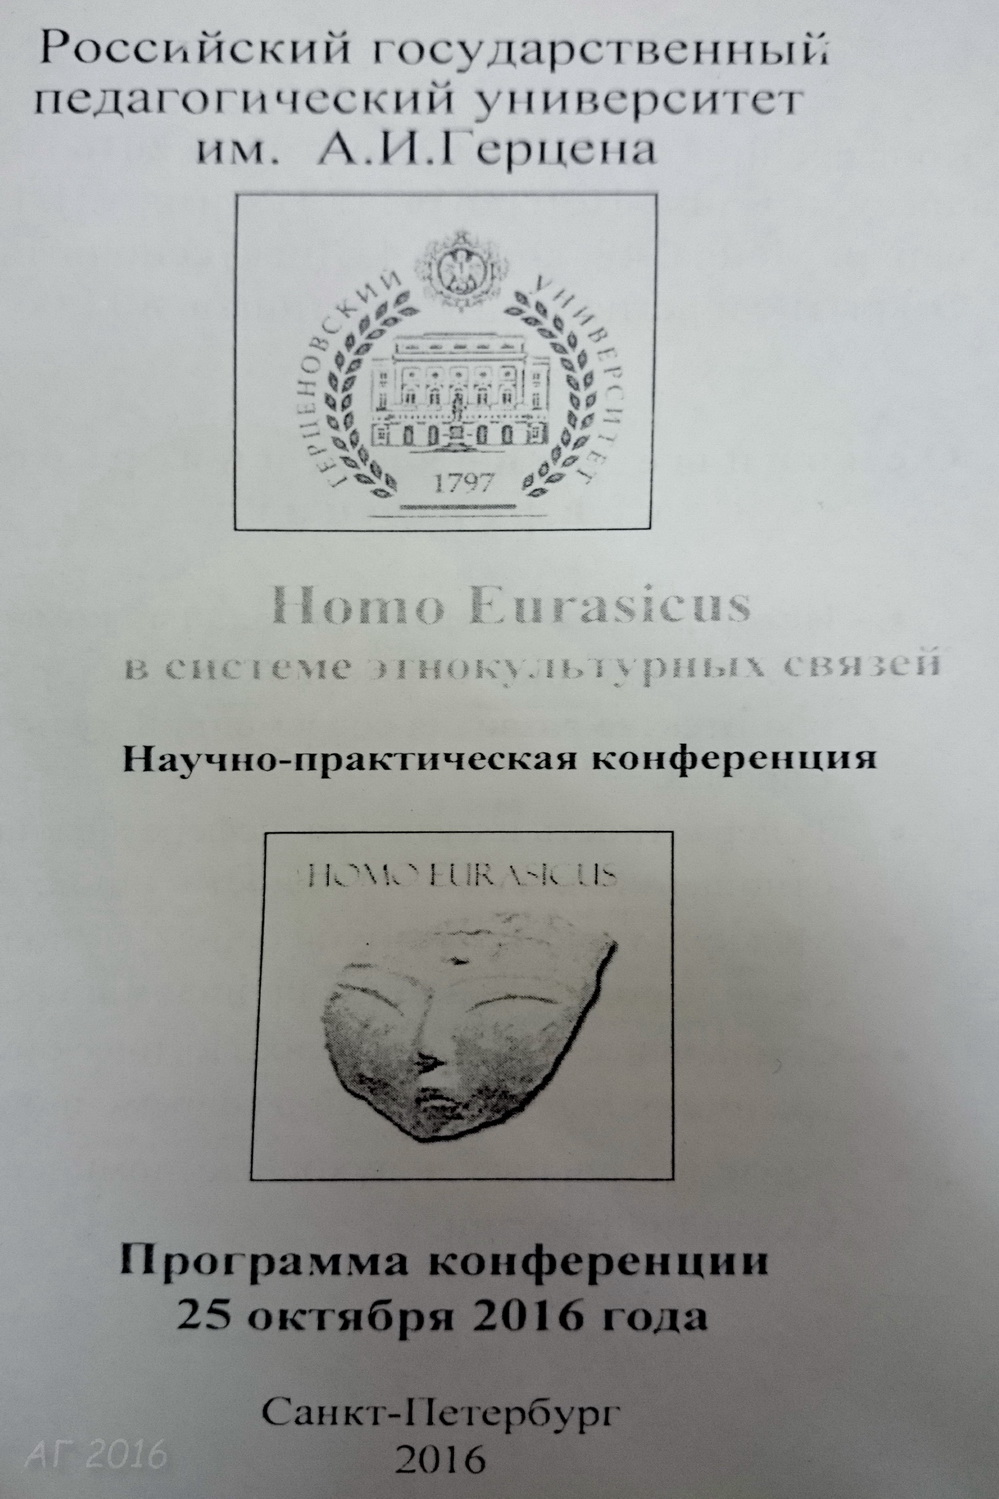  Программа конференции «Homo Eurasicus: в системе этнокультурных связей», РГПУ им. А.И. Герцена, 25.03.2016